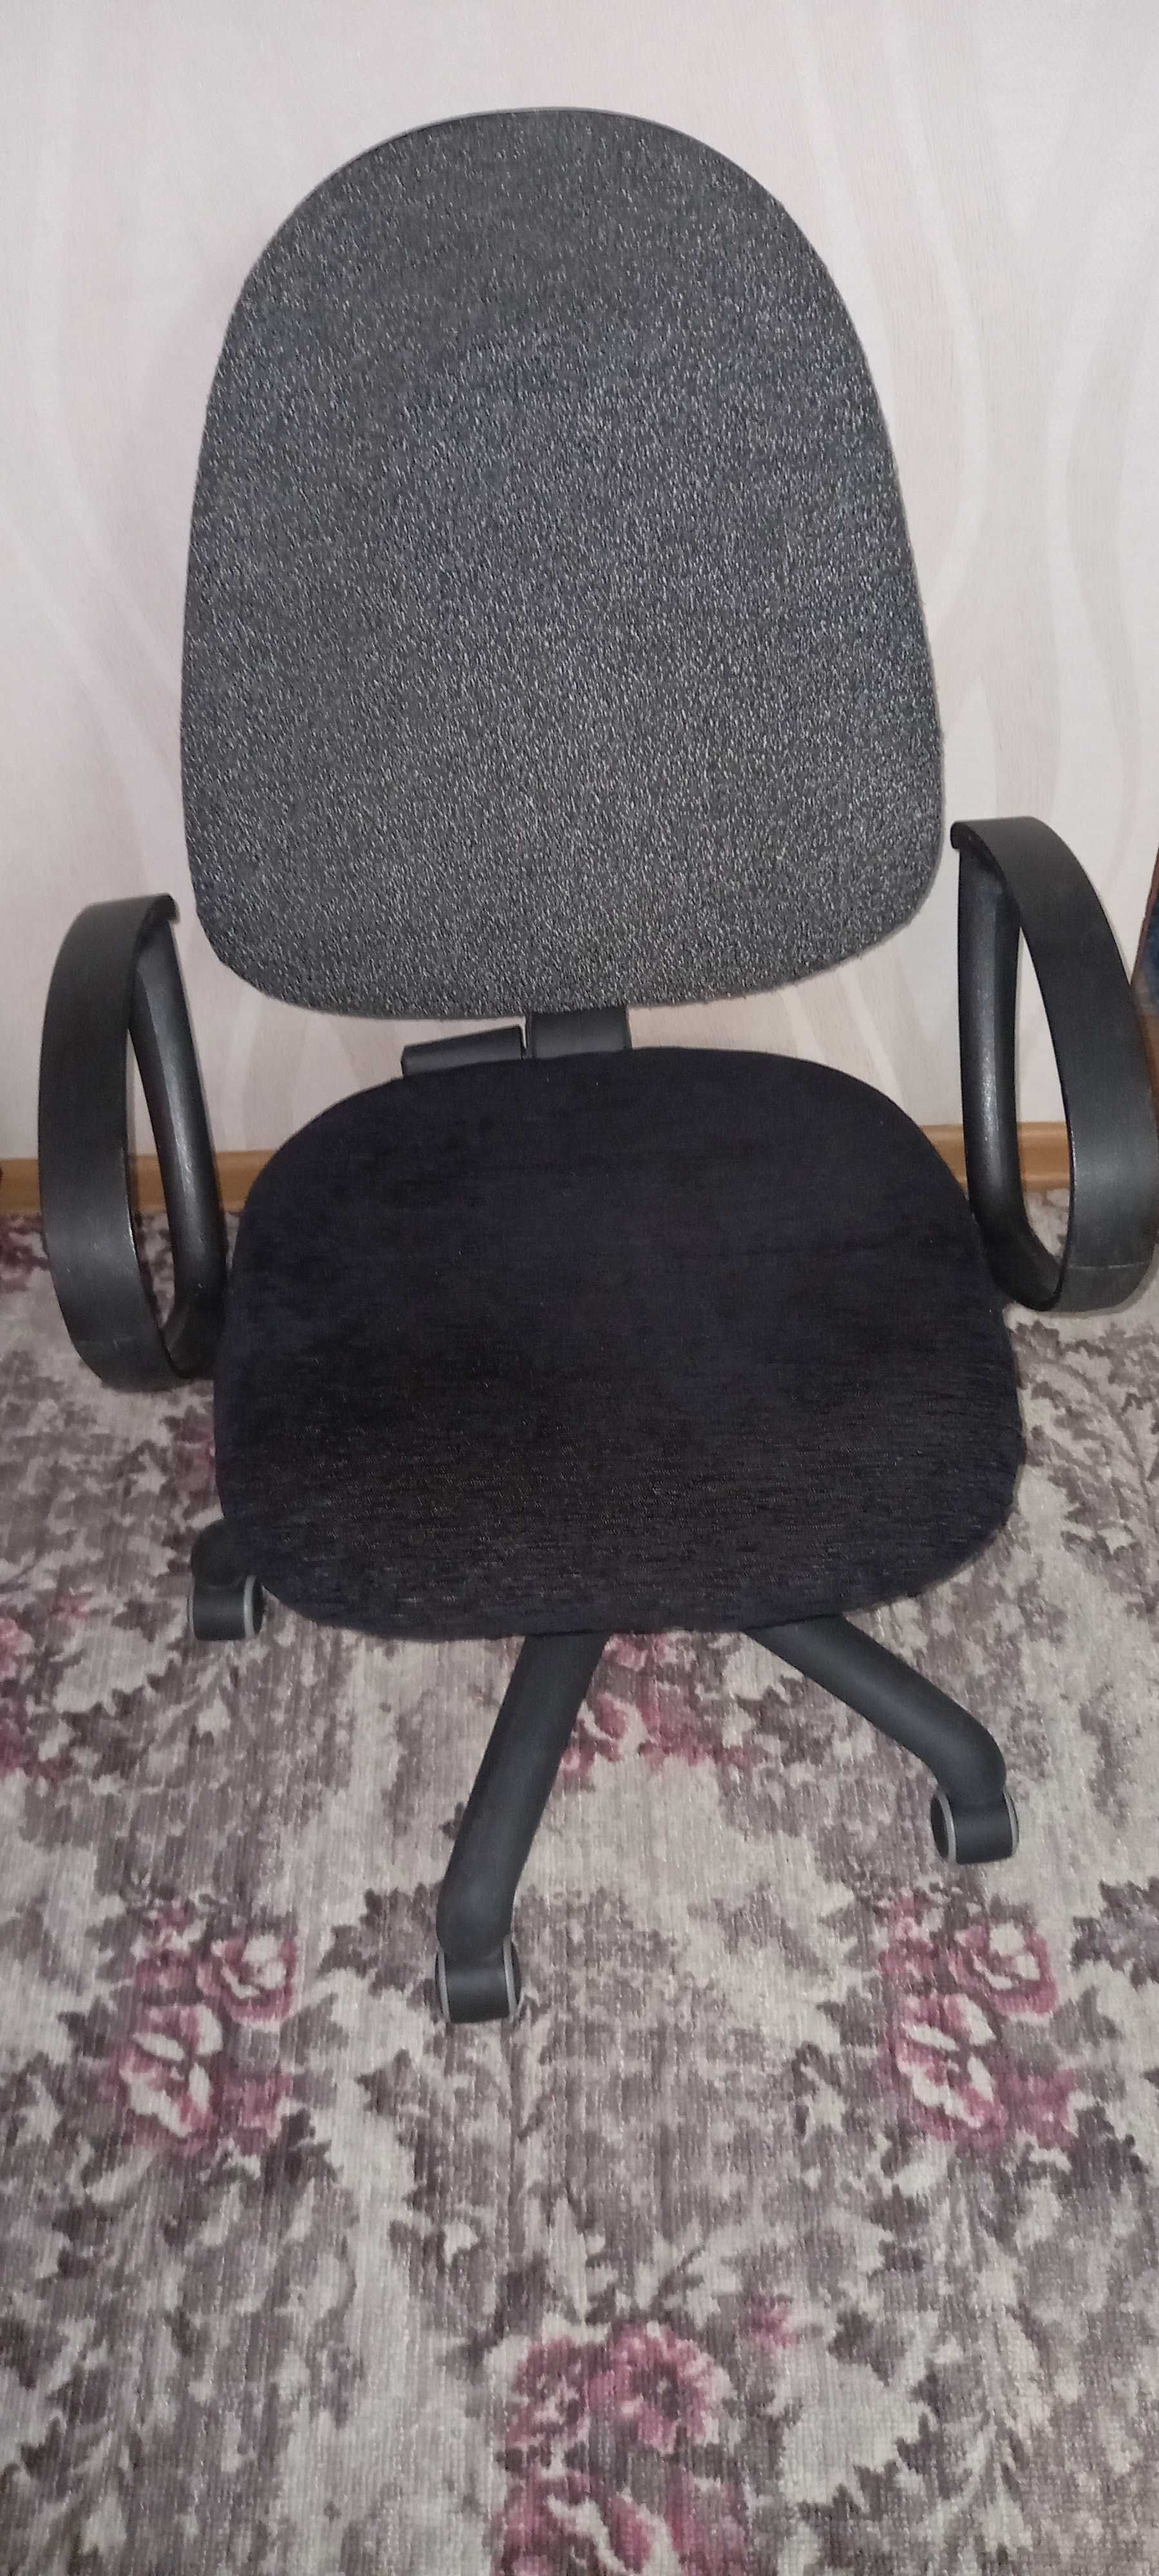 компьютерное кресло